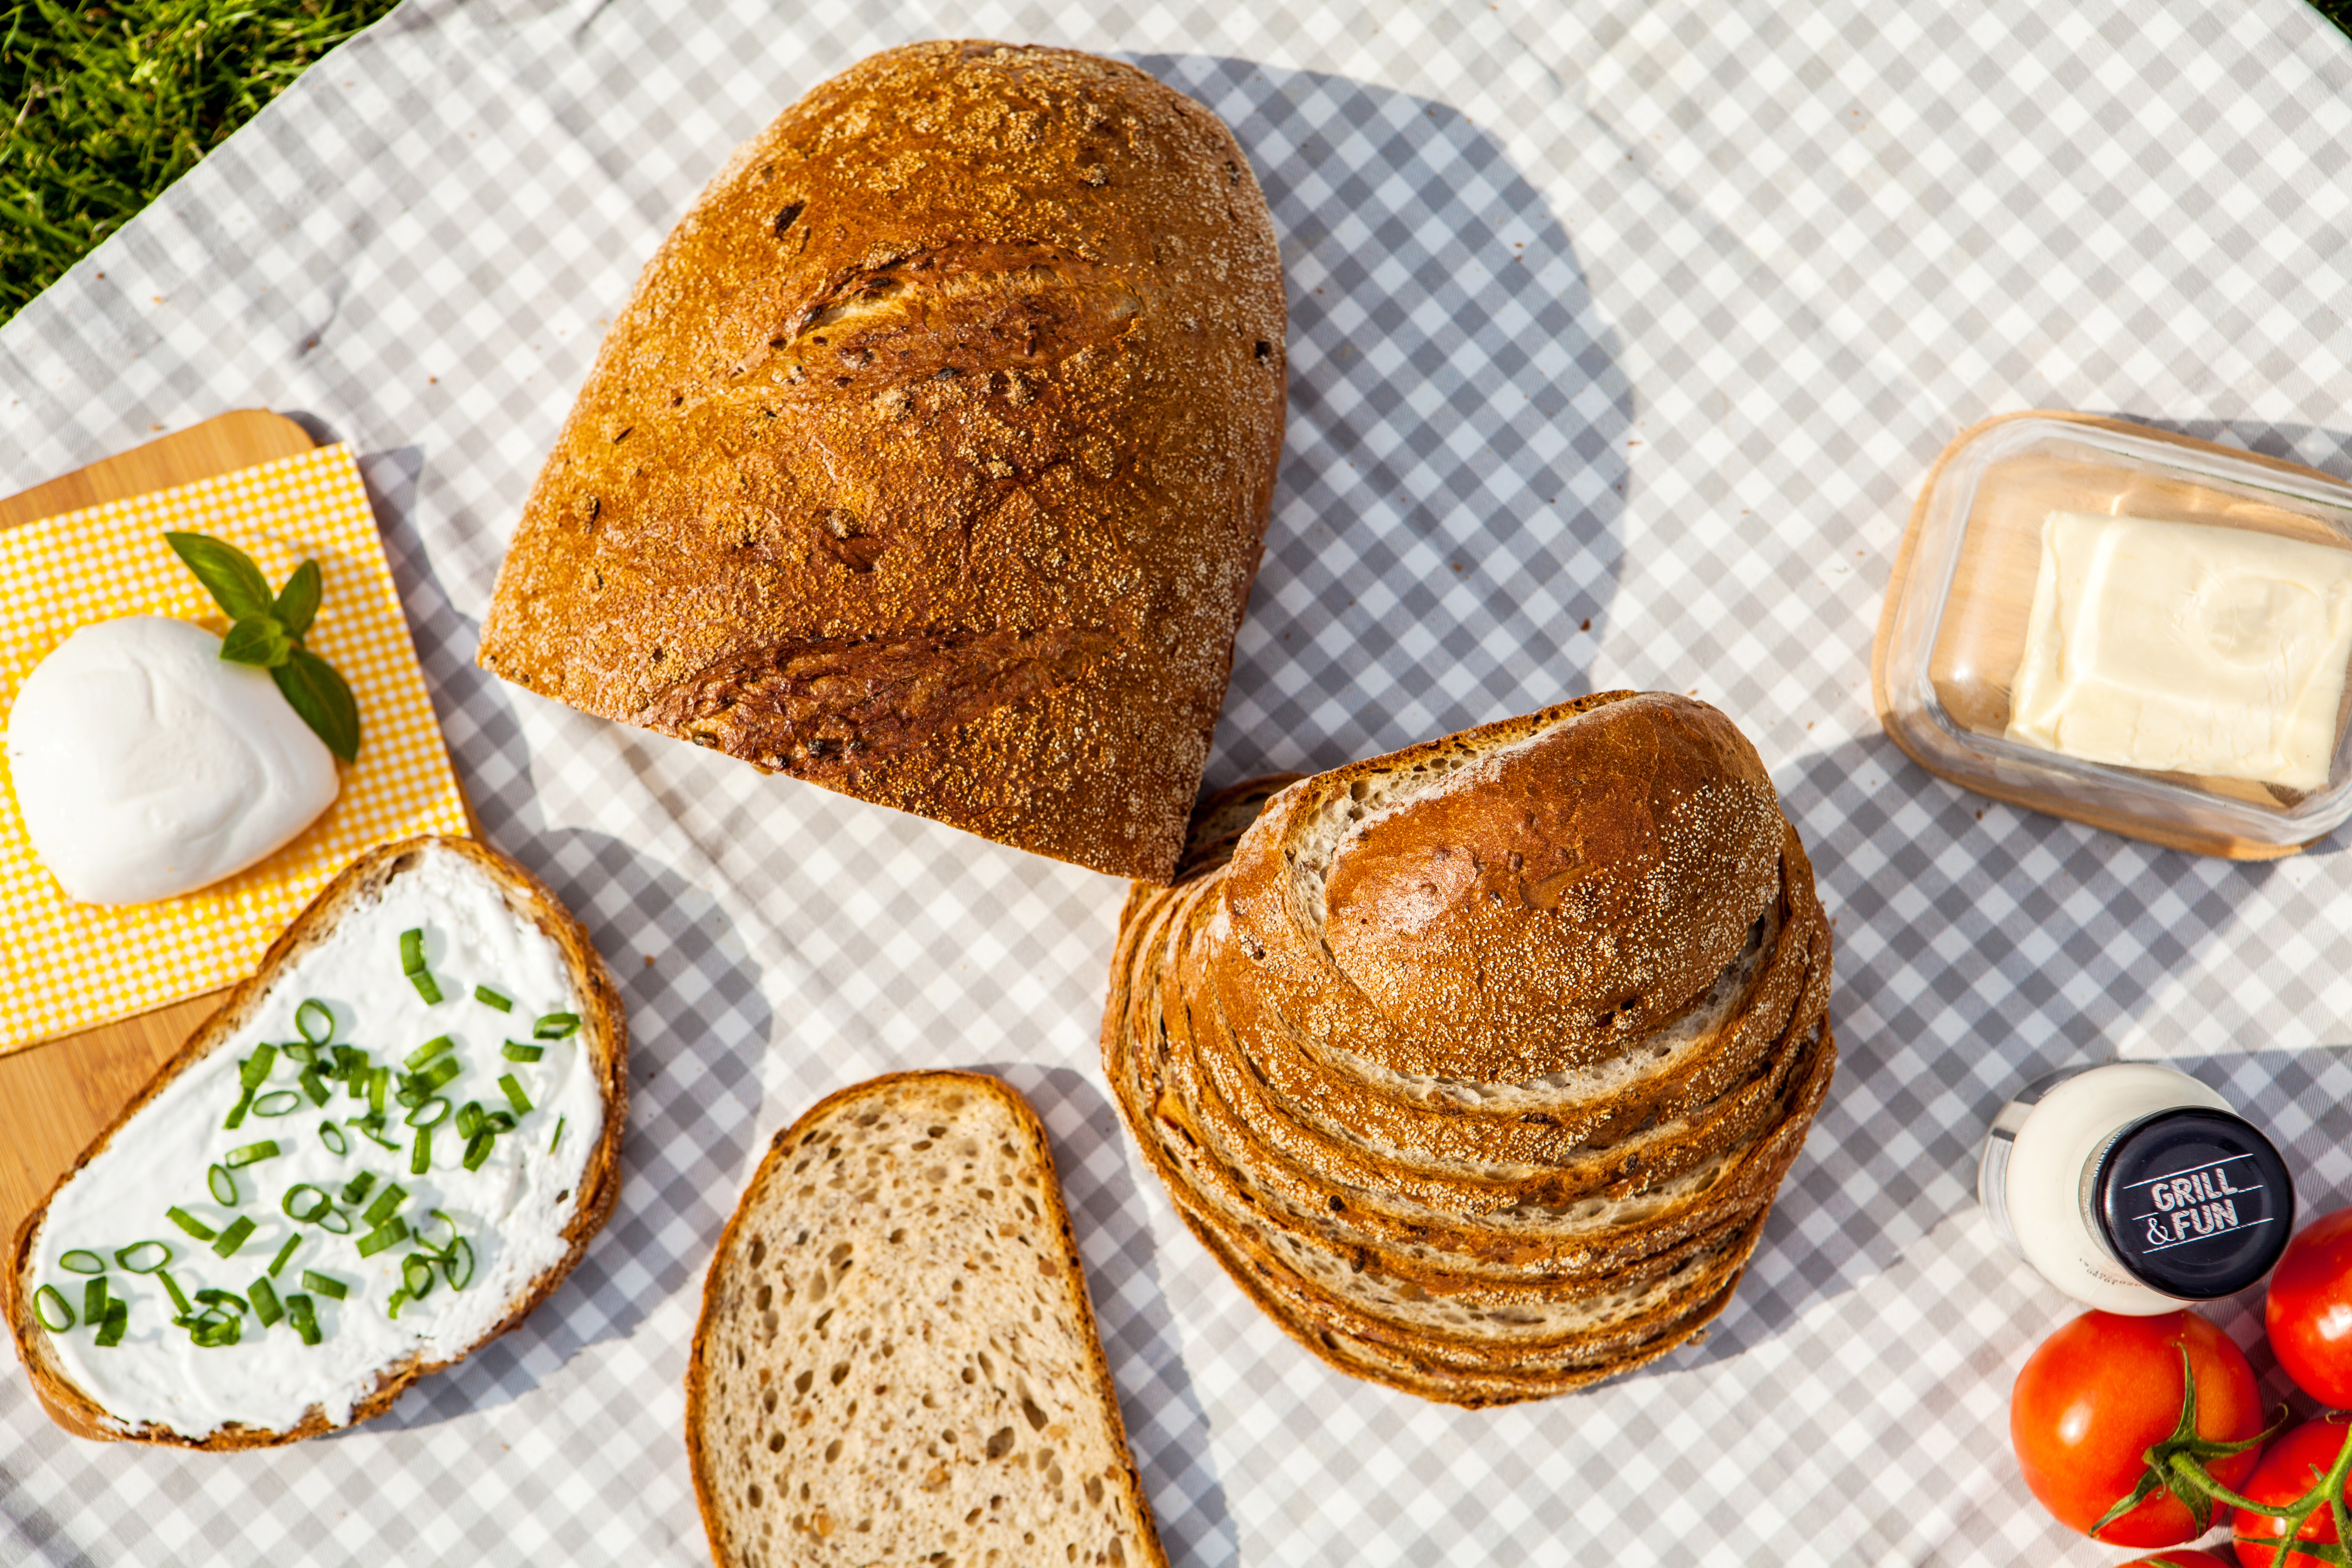 Chleb Sielankowy z kiełkami pszenicy i siemieniem lnianym